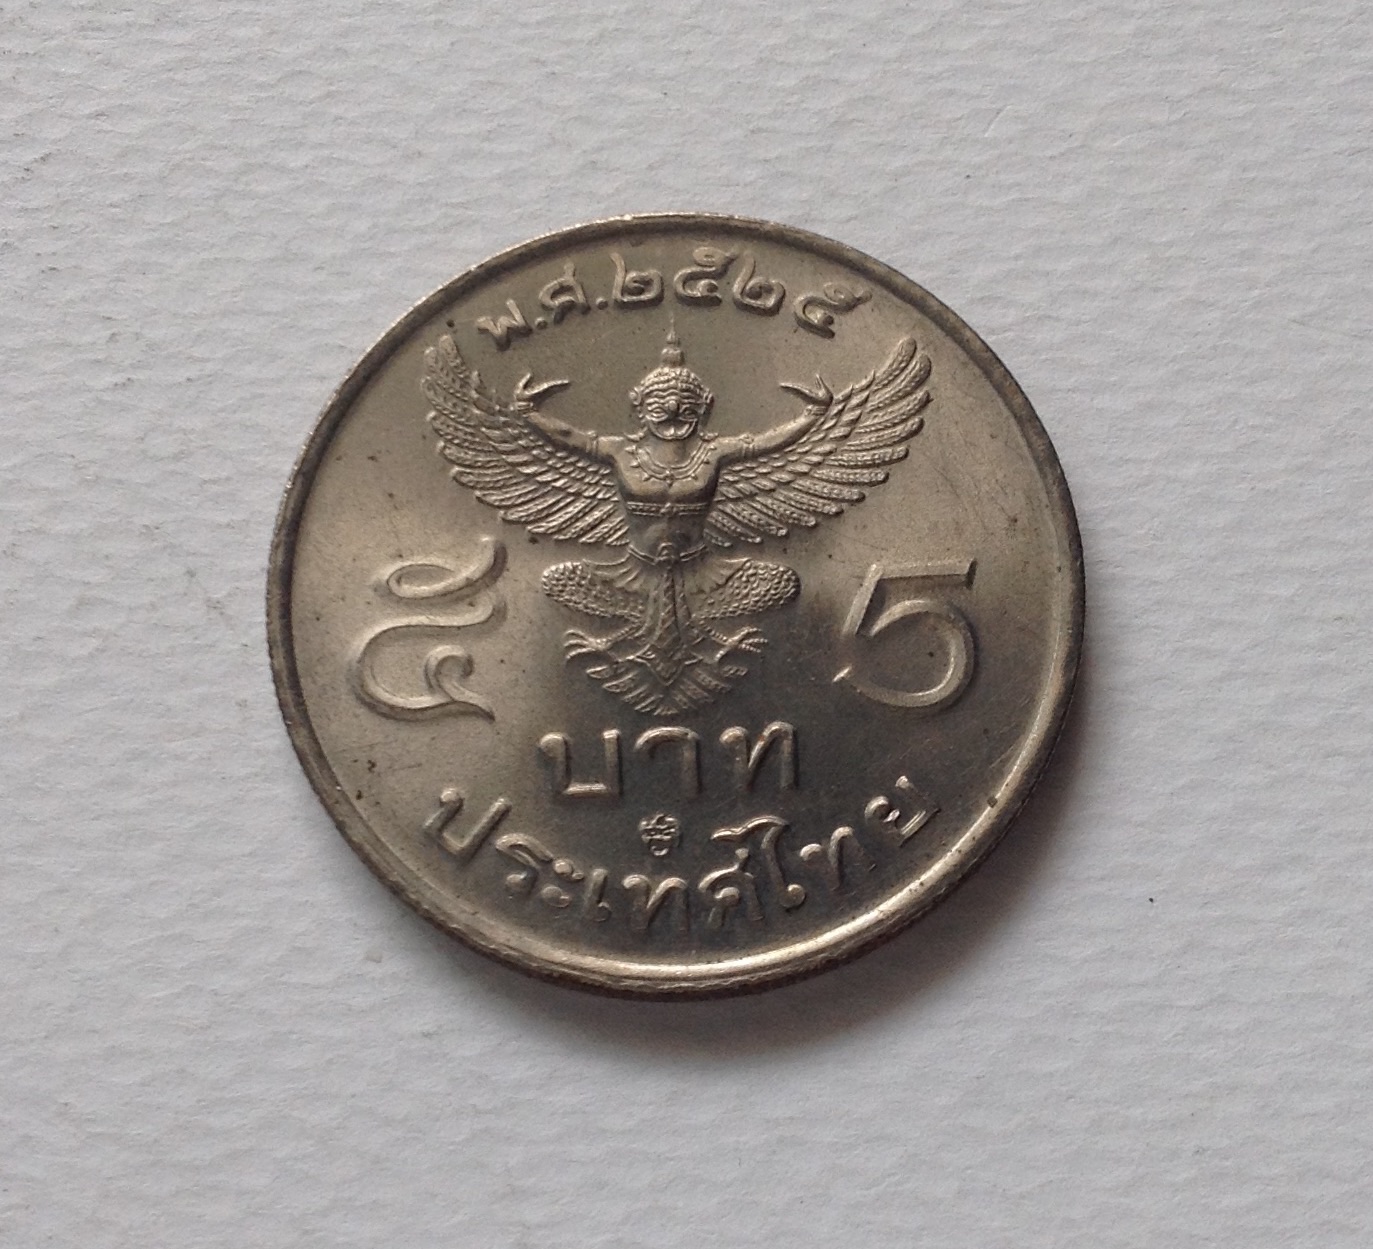 ขายเหรียญ เก่า 5 บาท พ.ศ. 2525 หลังครุฑตรง สภาพใหม่ รูปที่ 1